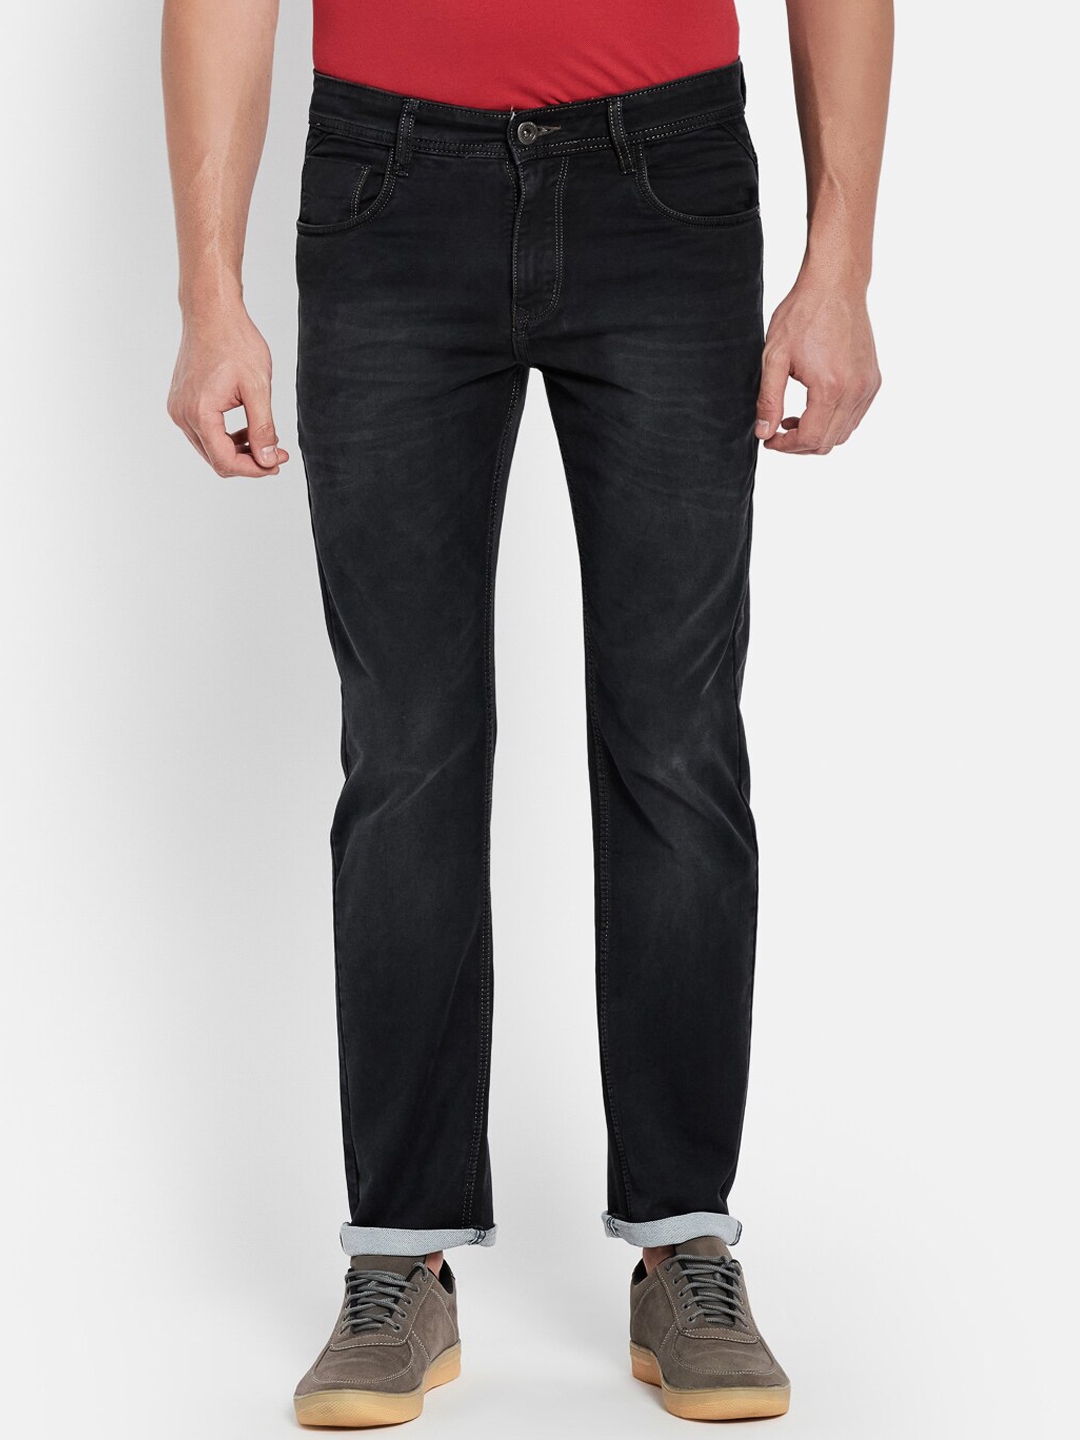 Buy Octave Men Black Solid Stretchable Jeans - Jeans for Men 17587490 ...